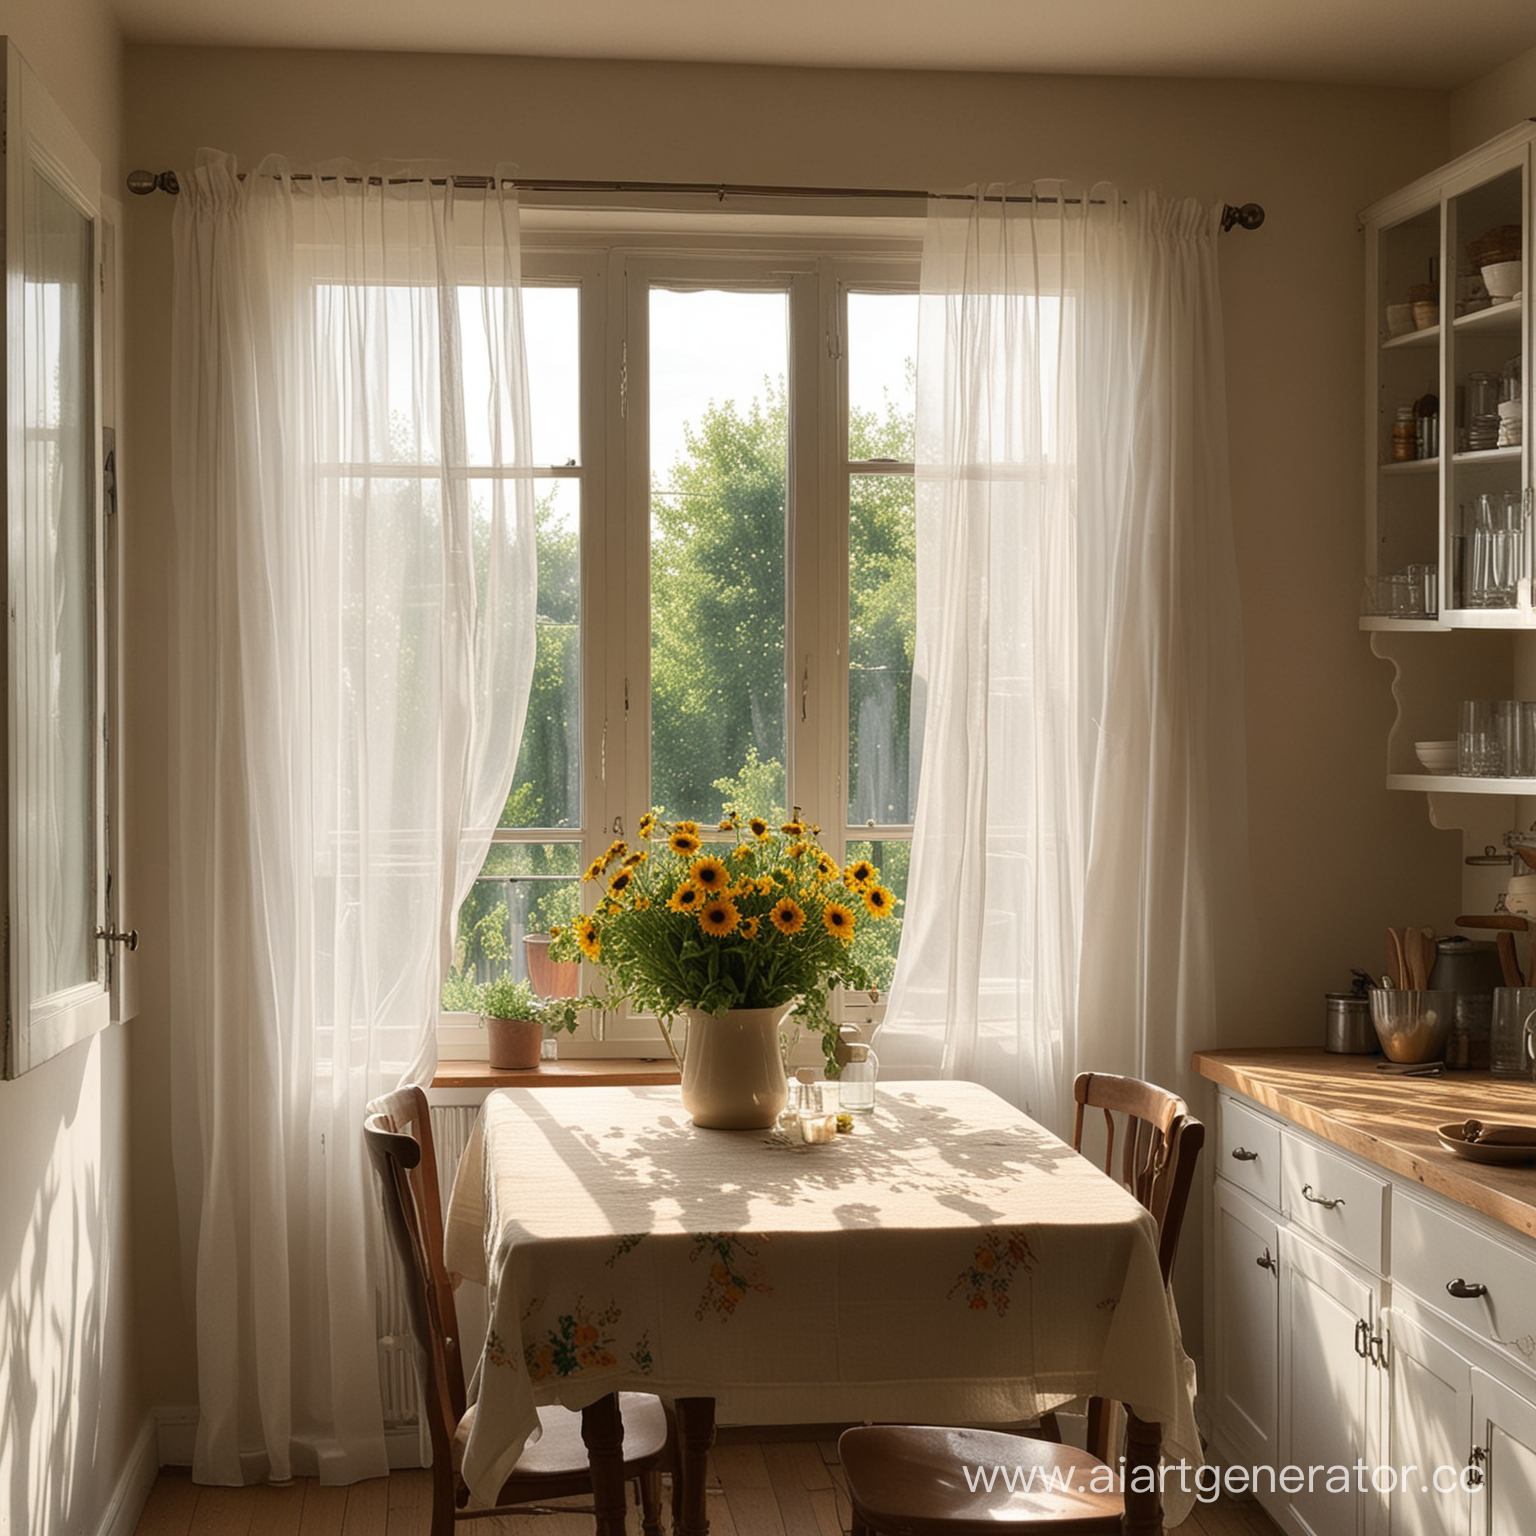 через окно в просторную комнату проникает солнечный свет и занавески красиво развиваются на ветру все это происходит на кухне где стоят цветы а картина развивается за столом